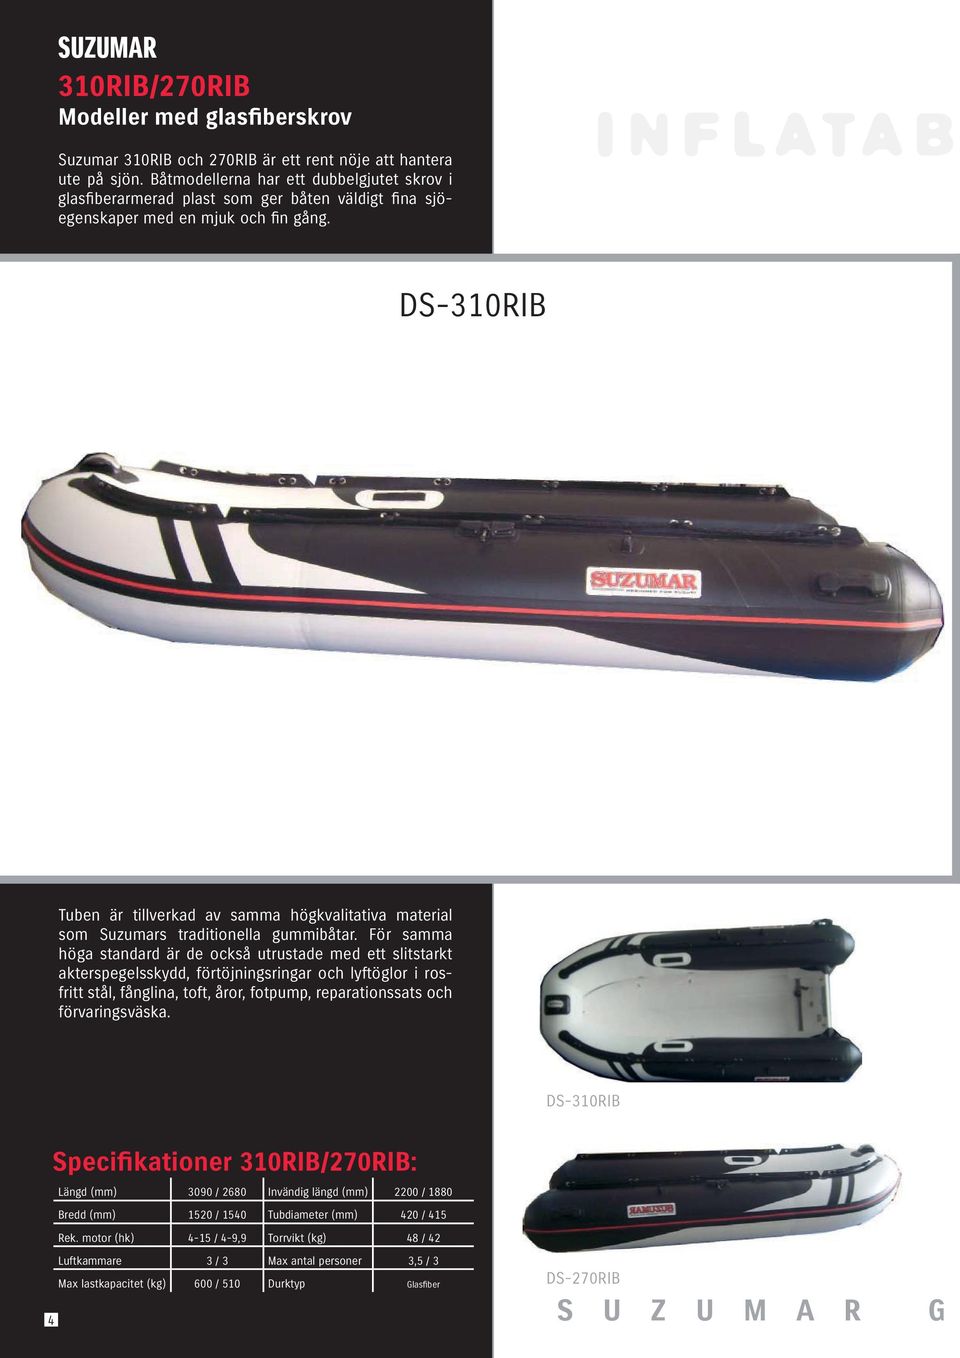 DS-310RIB Tuben är tillverkad av samma högkvalitativa material som Suzumars traditionella gummibåtar.